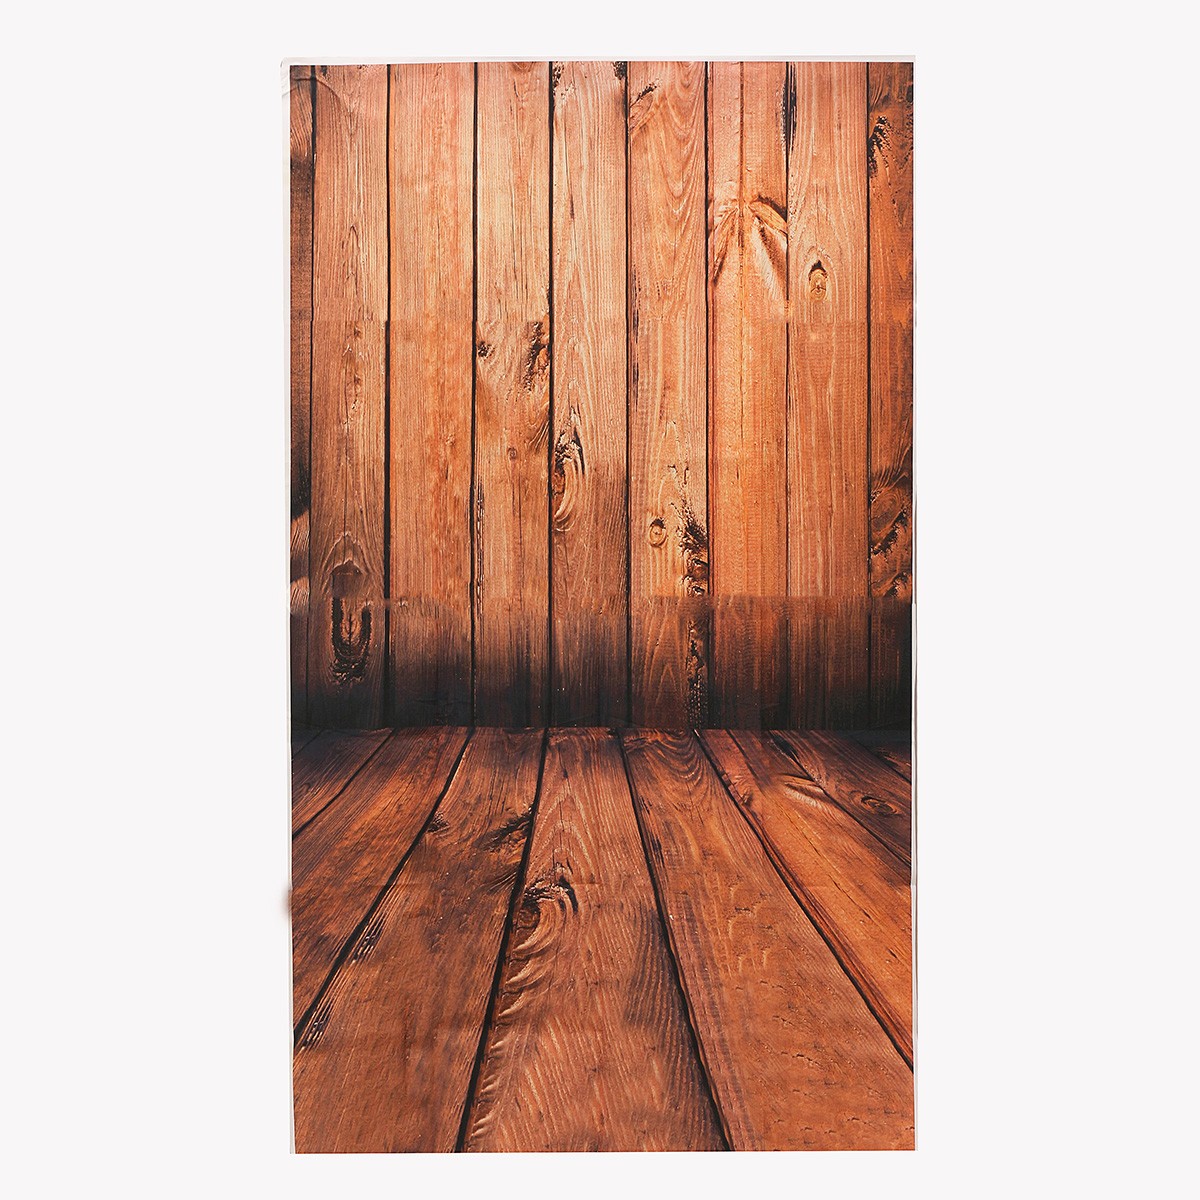 

3x5FT Vinyl Brown Wood Floor Wall Photography Backdrop Background Studio Prop